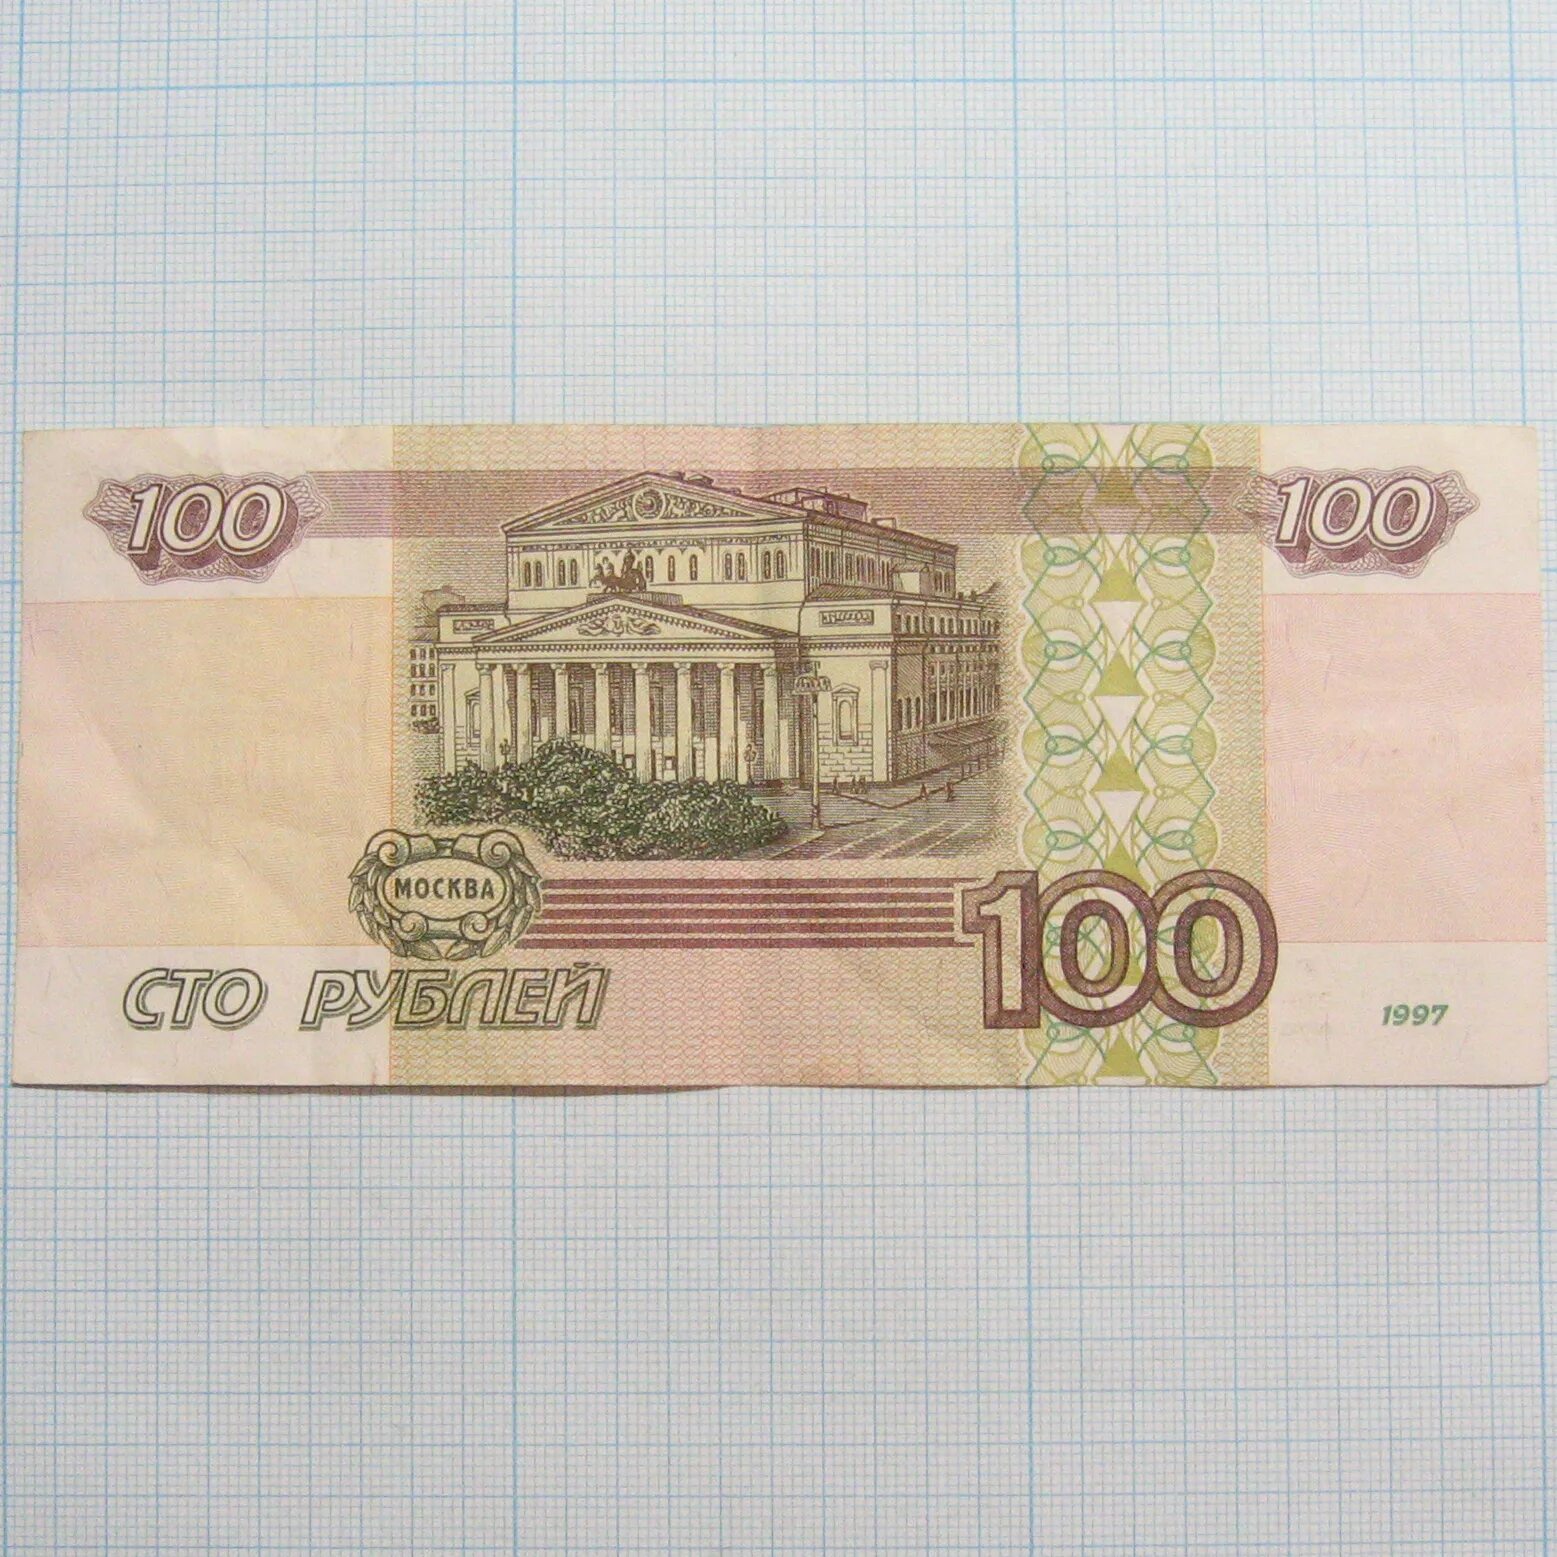 100.000 2. 100 Рублей. Купюра 100 рублей. Банкнота 100 рублей. СТО рублей 1997.